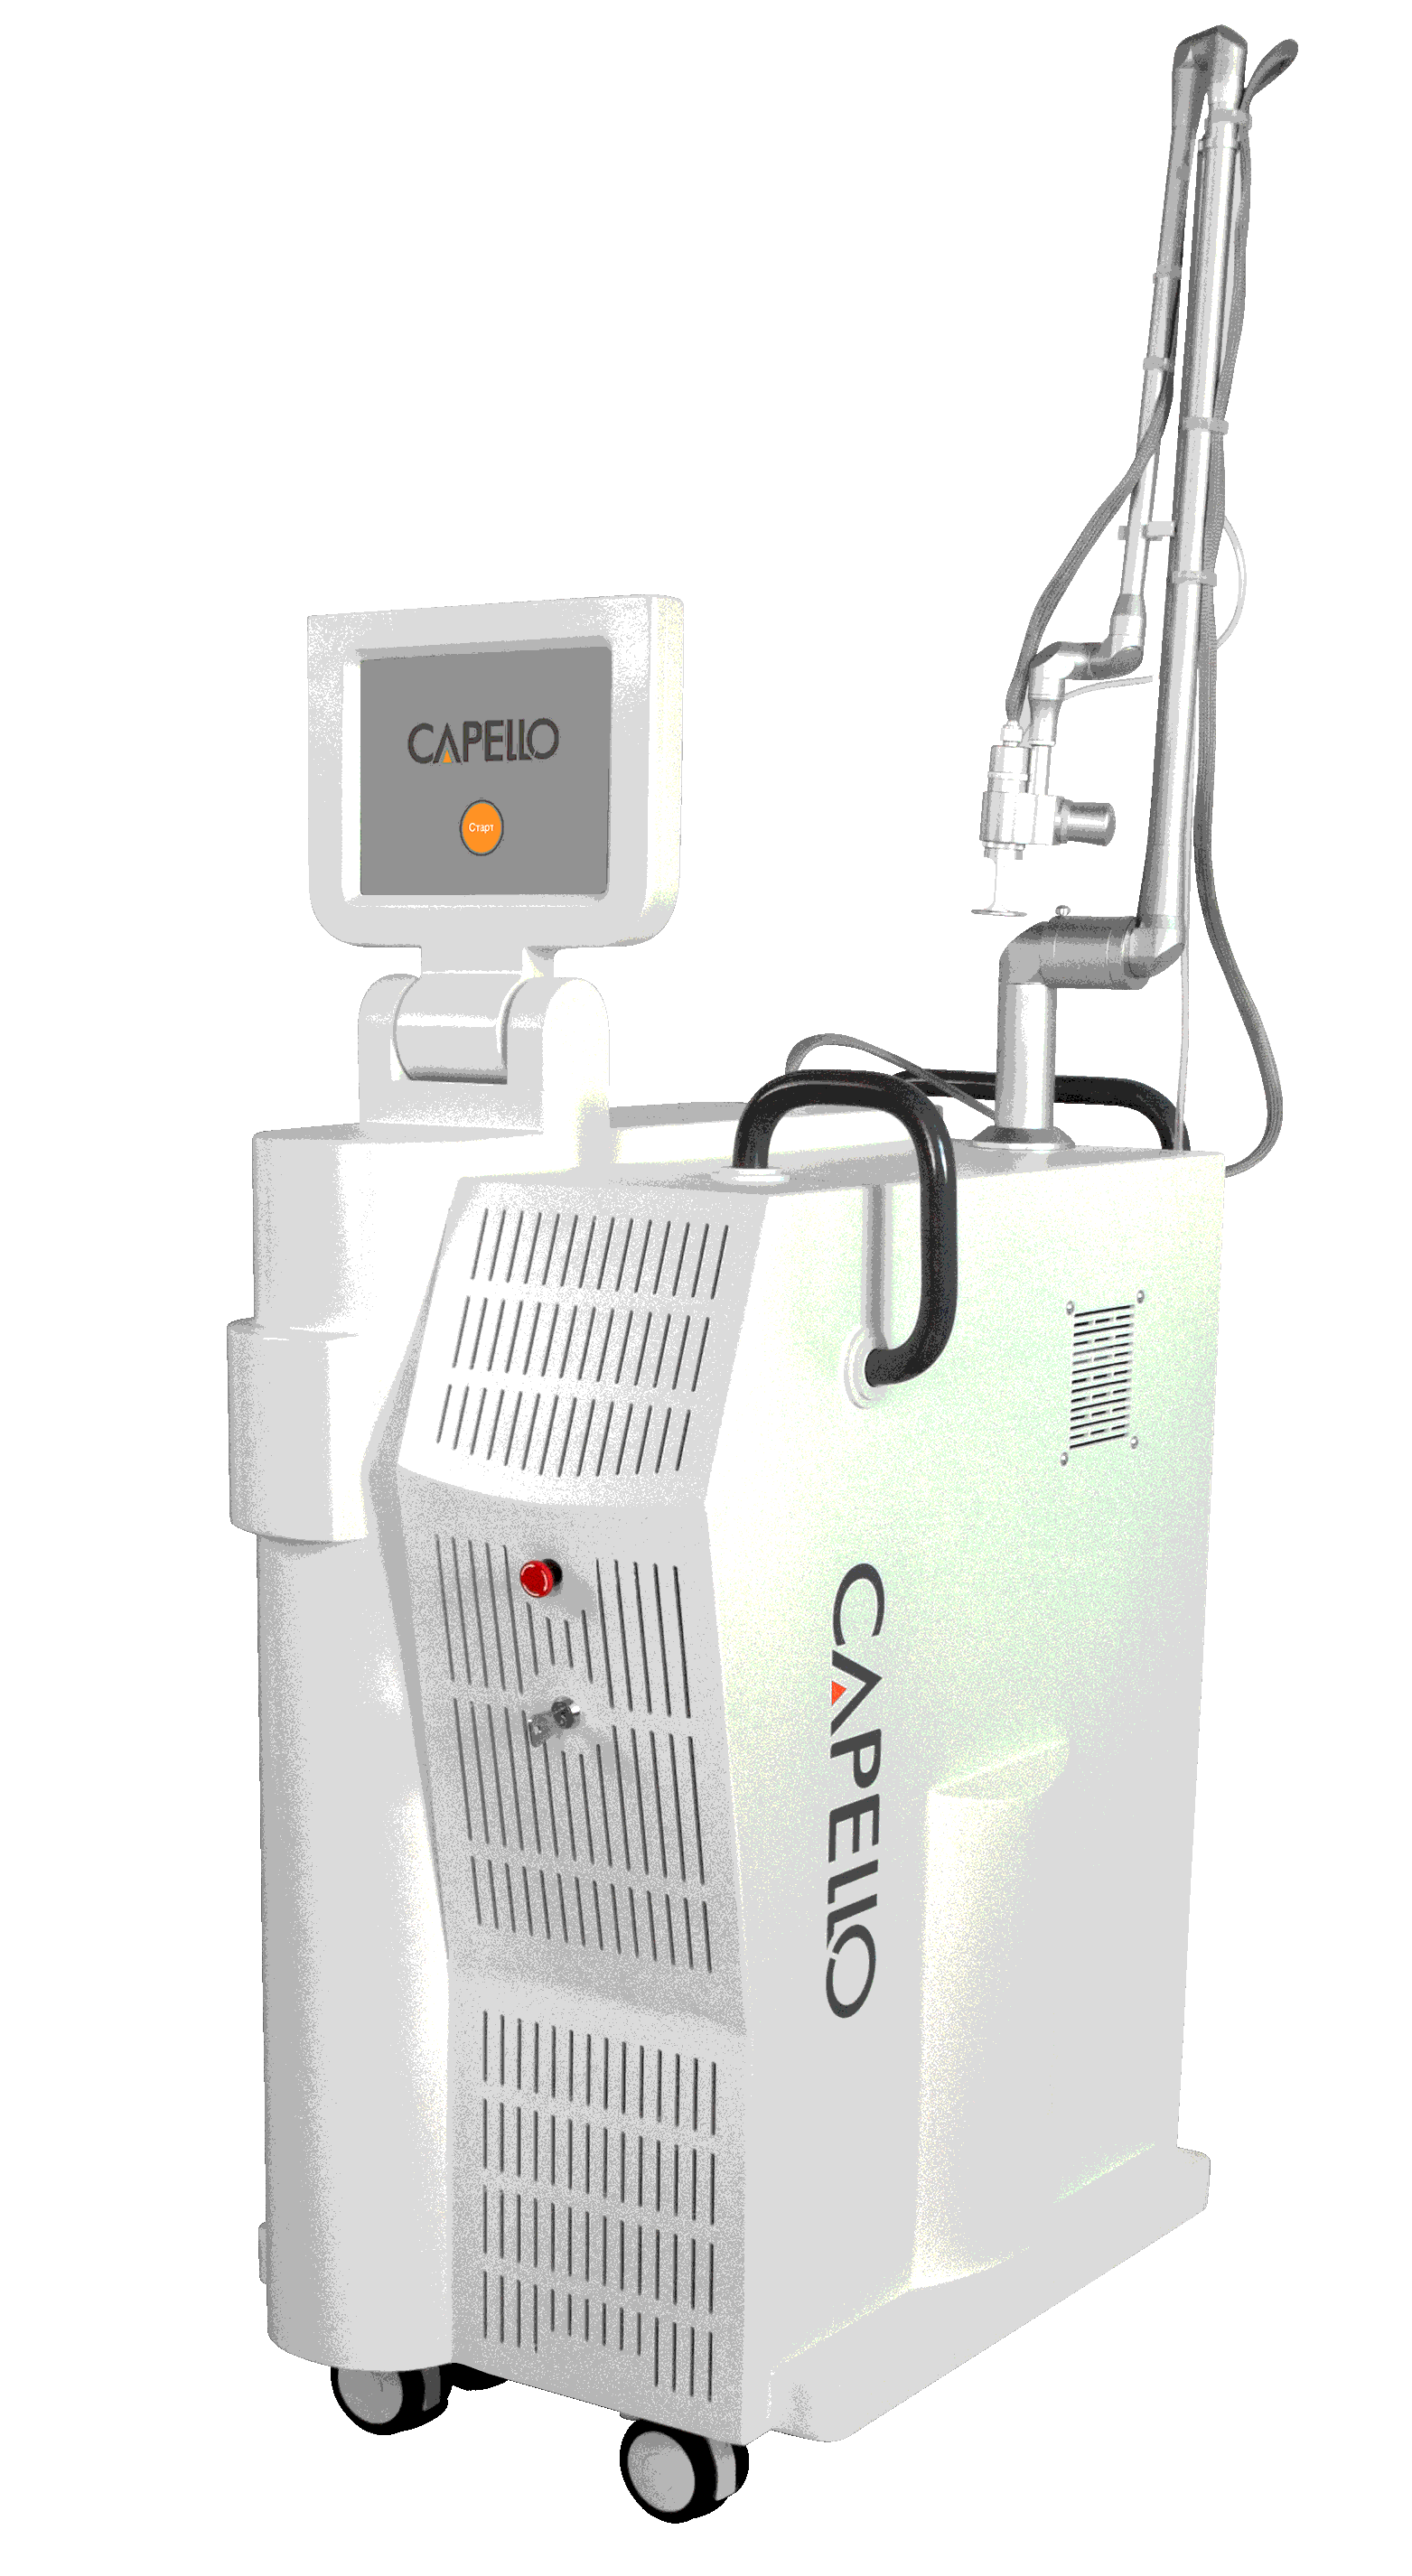 CAPELLO Luxe лазер для эпиляции и омоложения кожи